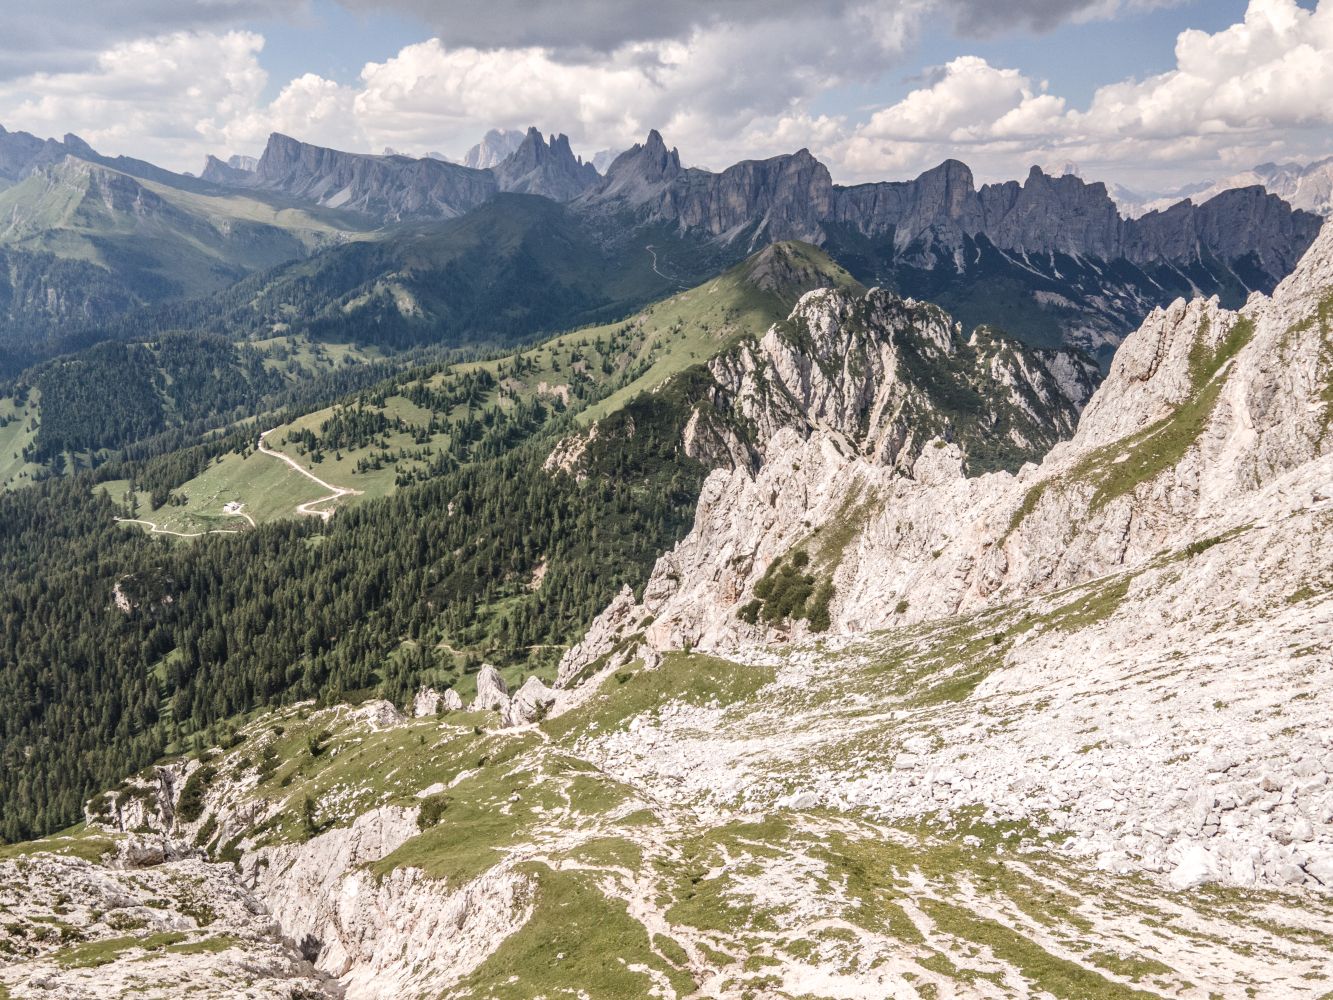 Widok z podejścia na przełęcz Val d’Arcia (fot. Joanna Dragon)